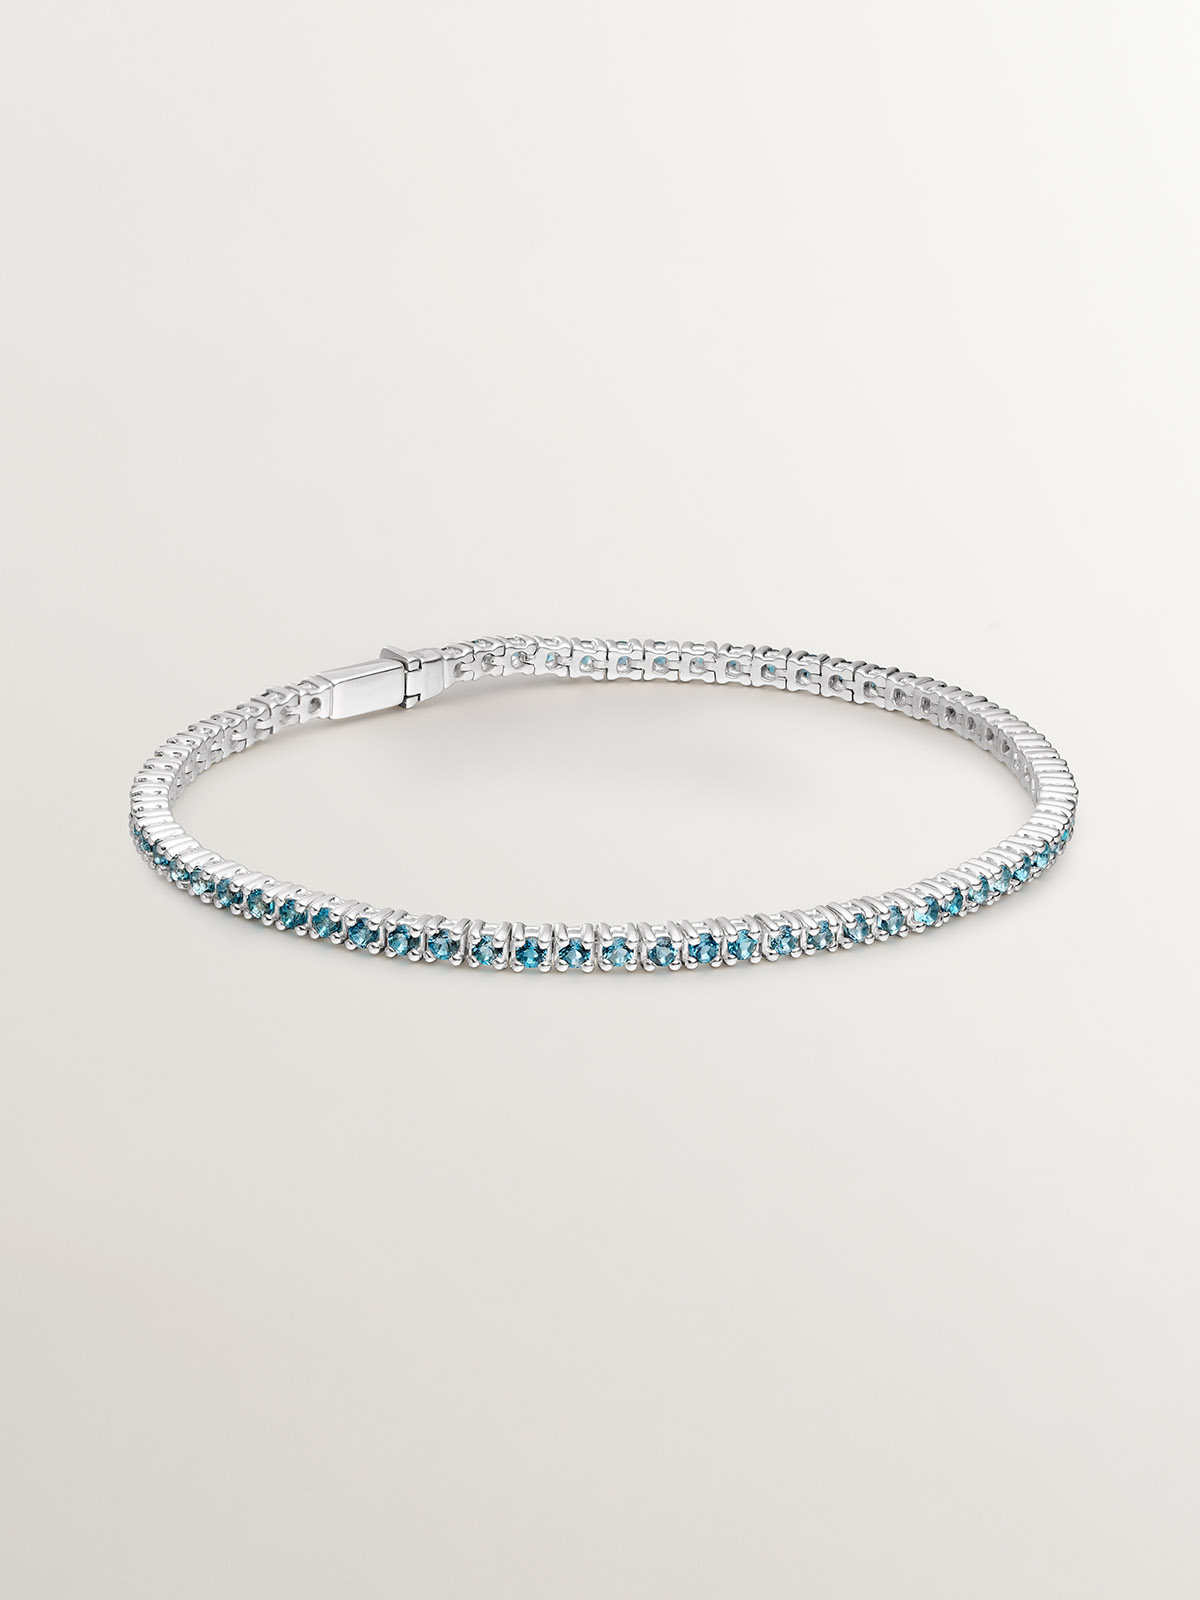 925 Silver bracelet with London blue topaz.